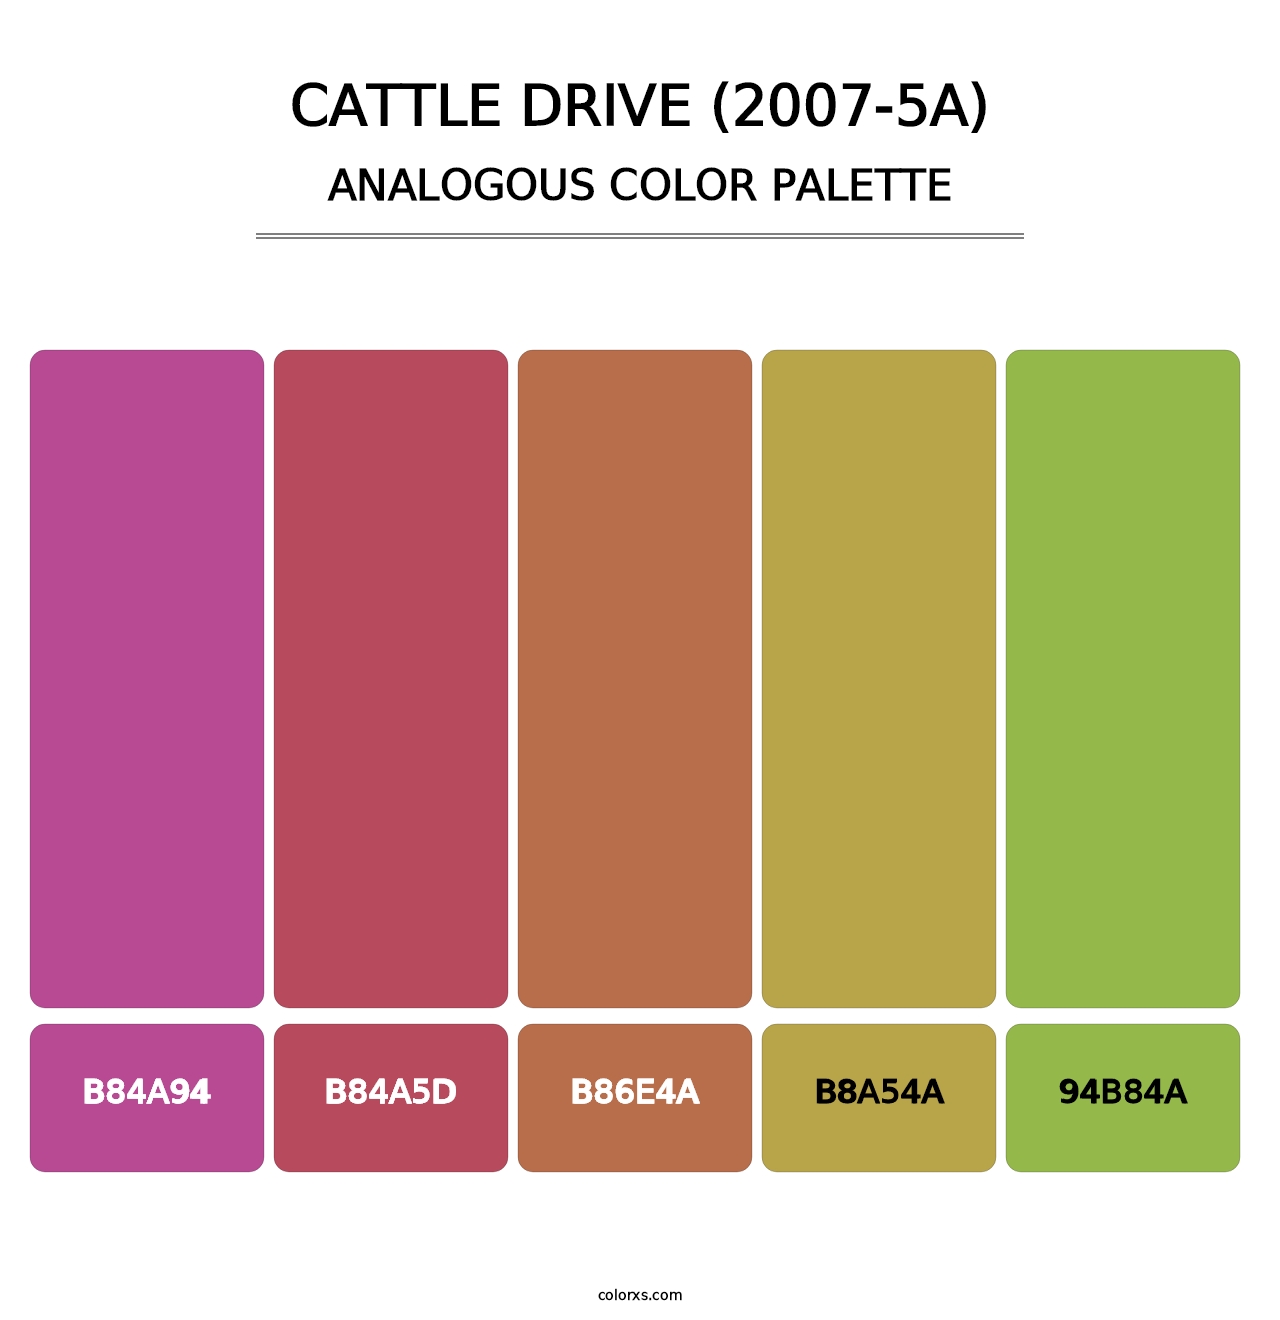 Cattle Drive (2007-5A) - Analogous Color Palette